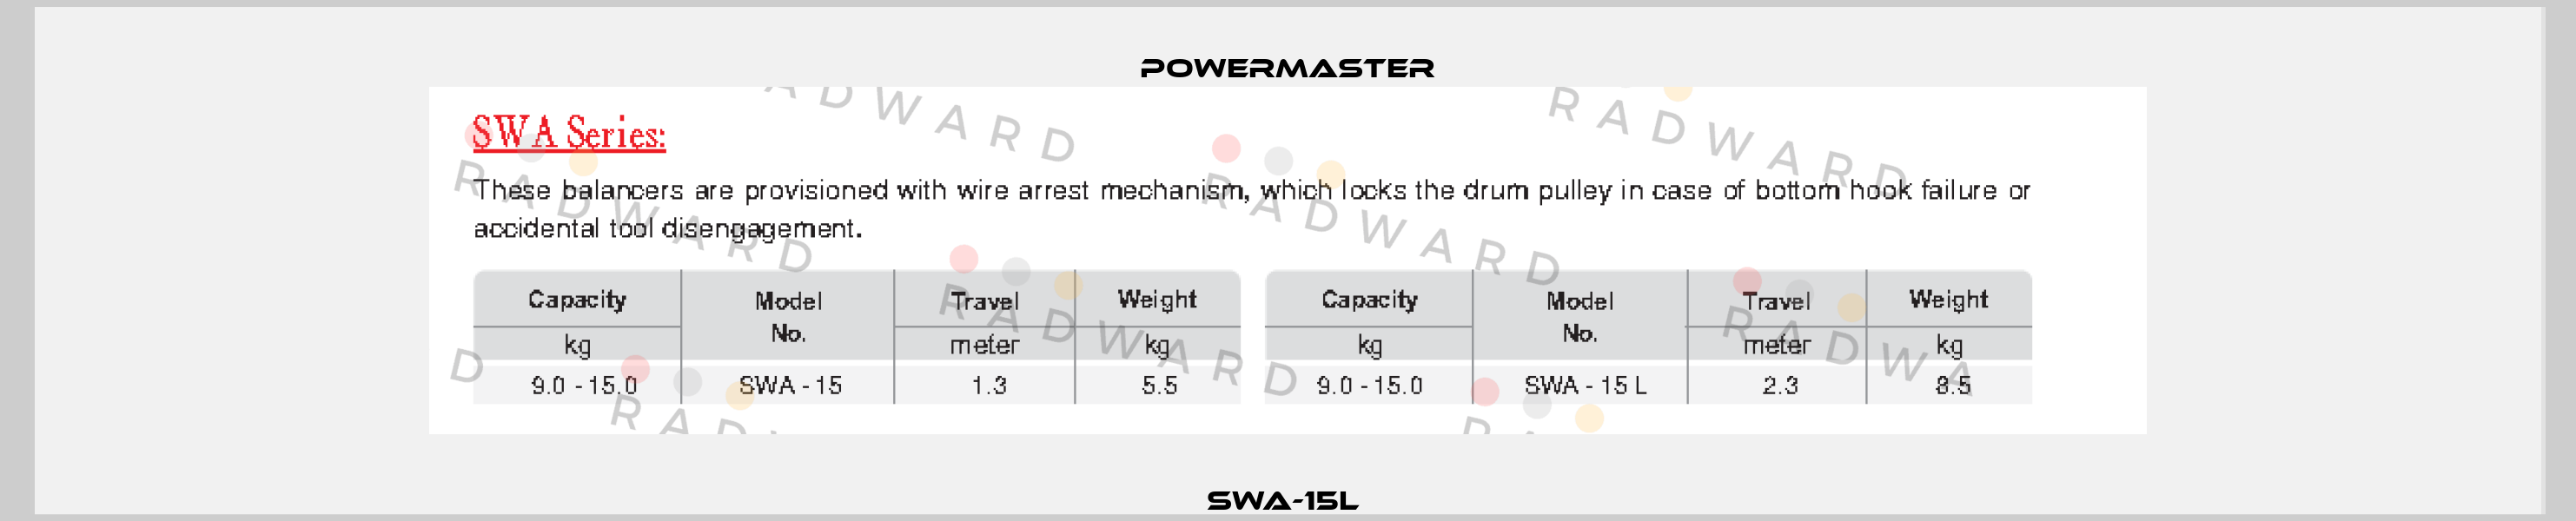 SWA-15L  POWERMASTER